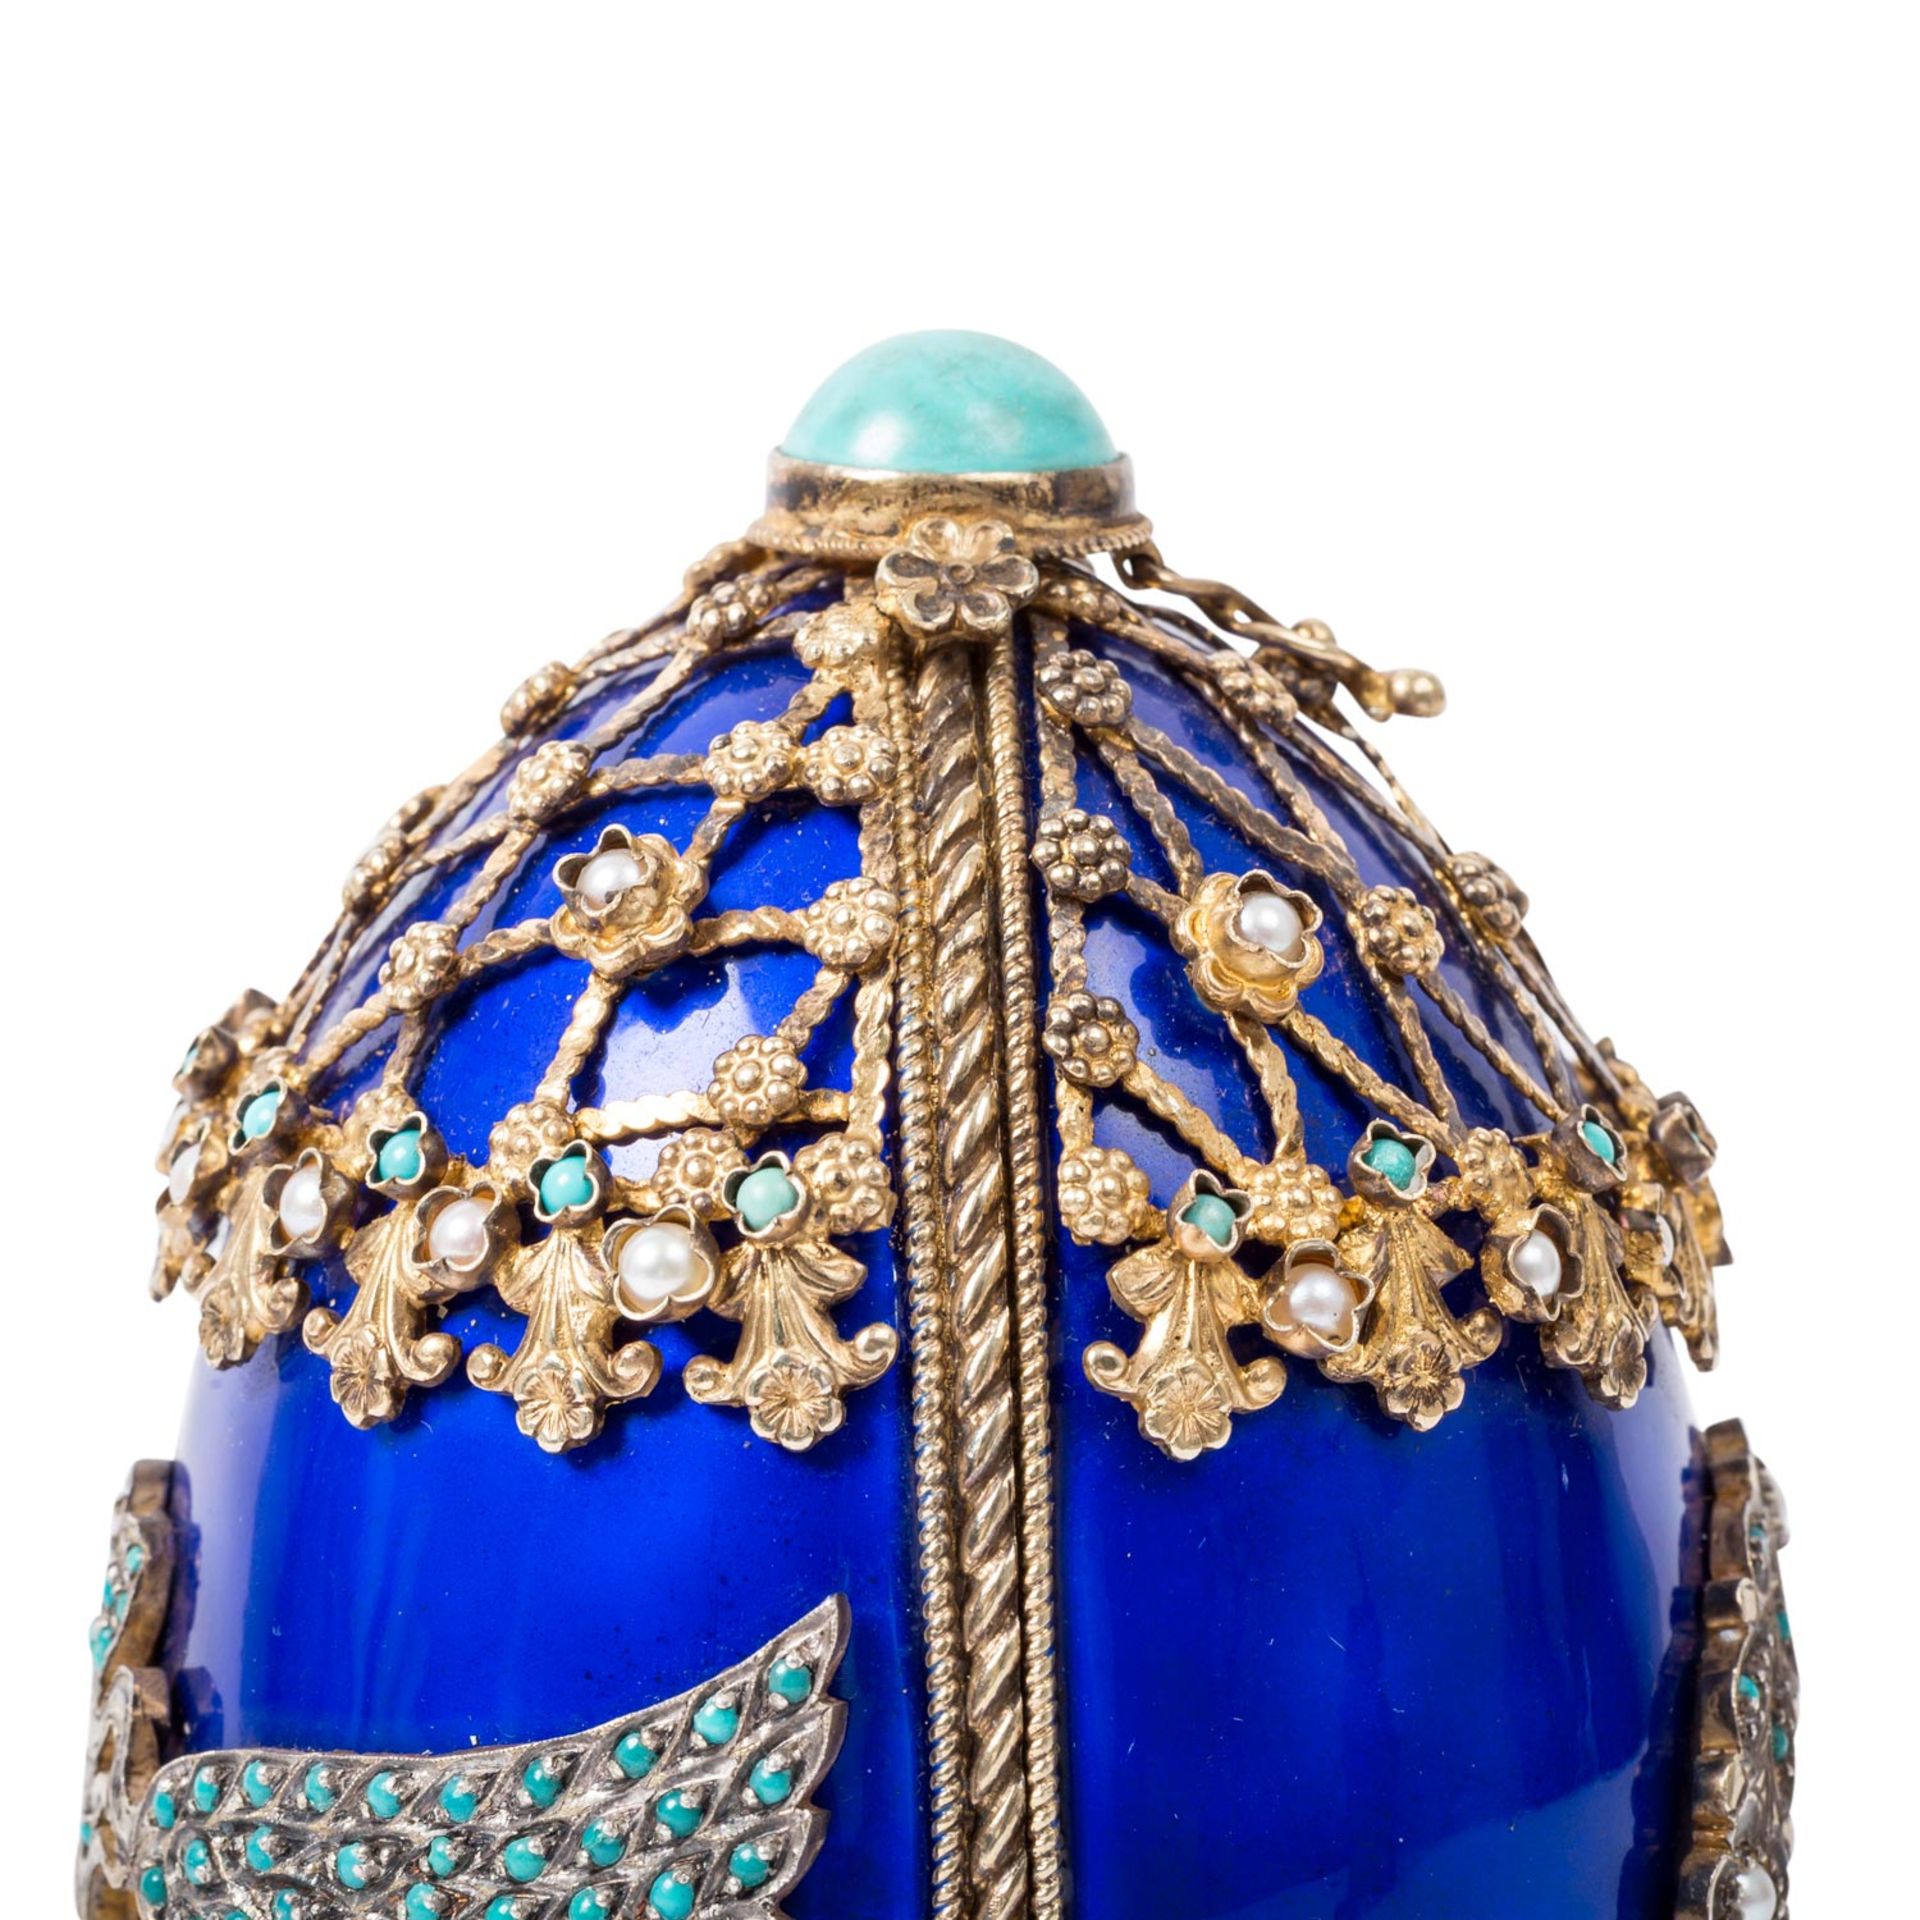 RUSSLAND aufklappbares Zier-Ei mit Reiterstandbild im Fabergé-Stil, 20. Jh. - Bild 6 aus 16